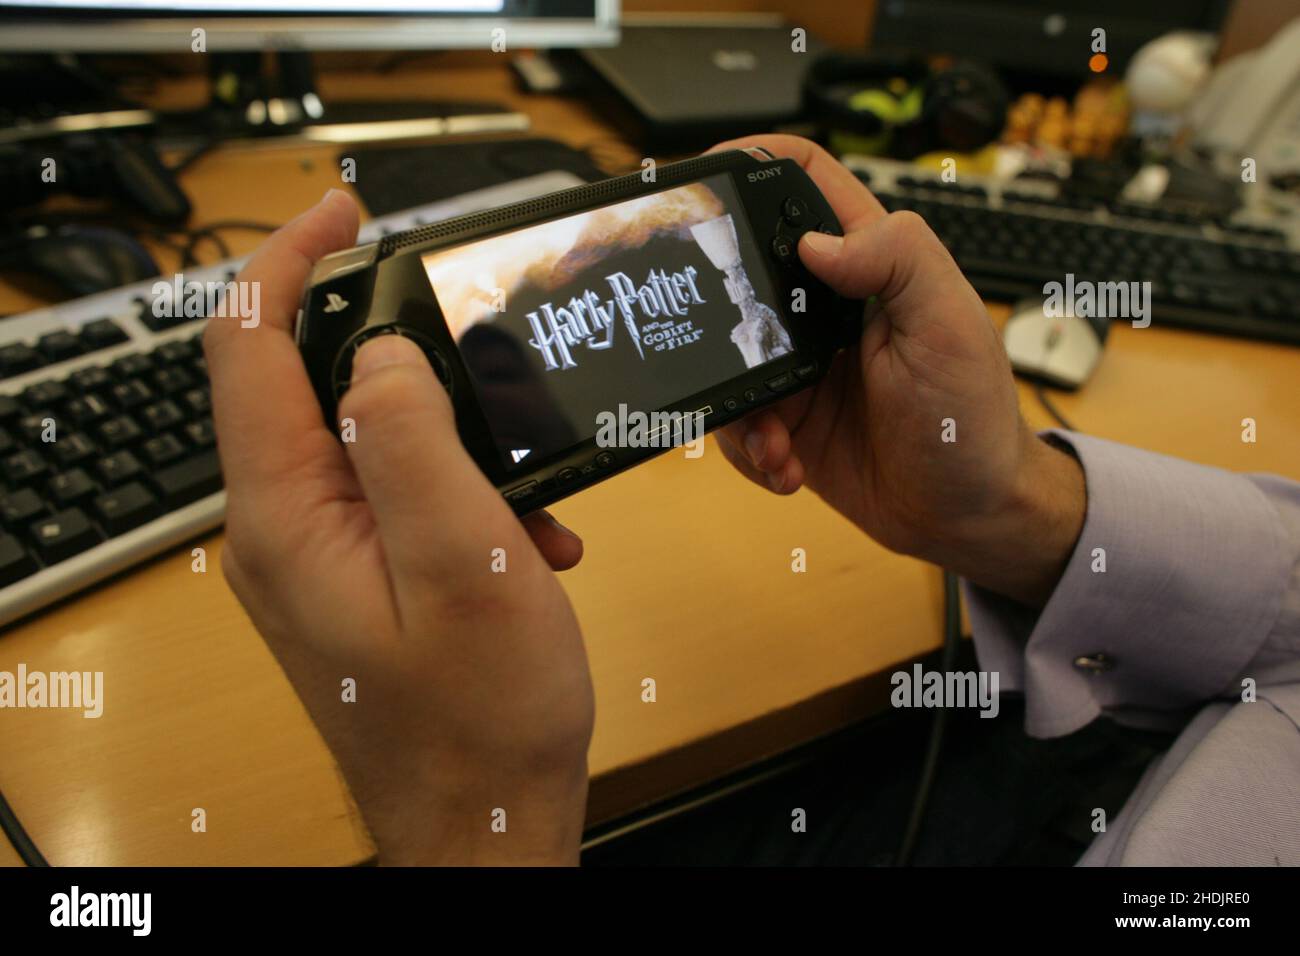 PSP-portabel PlayStation - Harry Potter jeu .Electronic Arts développeur de jeux vidéo étaient responsables de la création des jeux vidéo Harry Potter. Banque D'Images